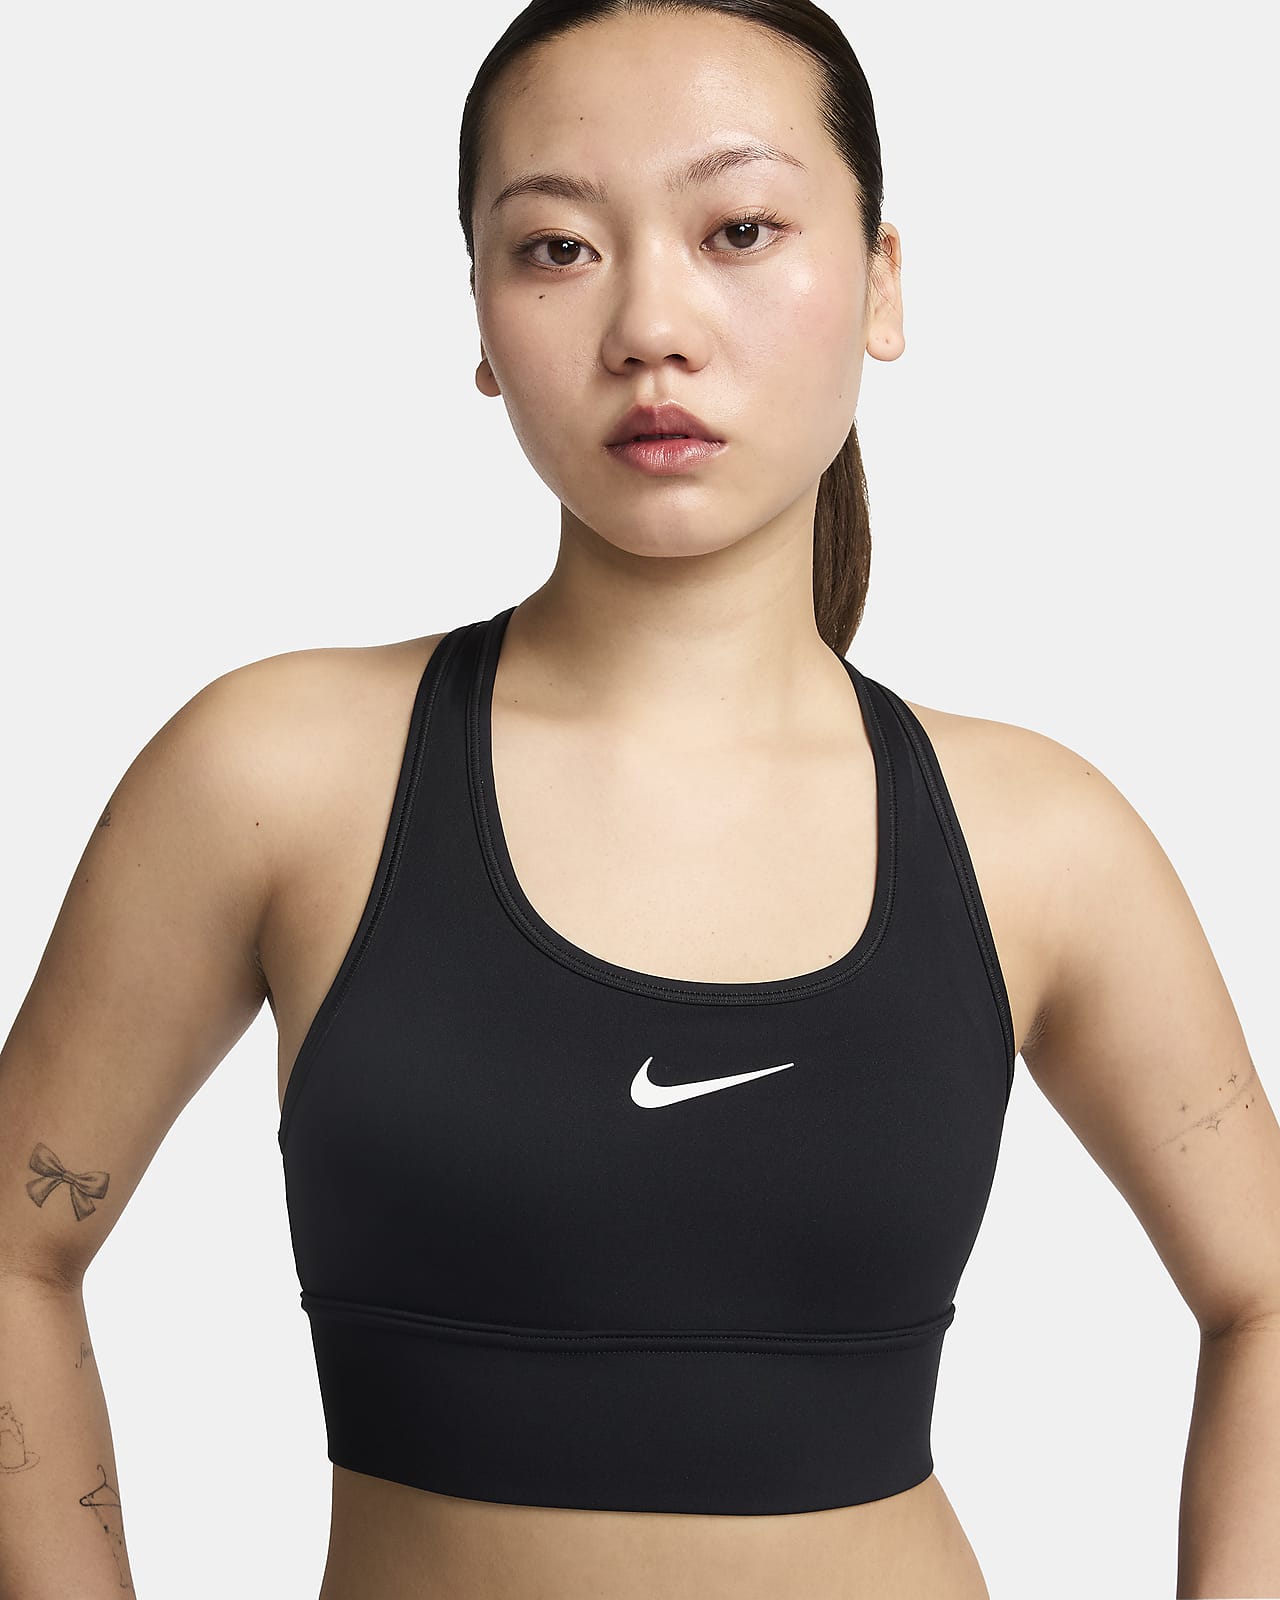 สปอร์ตบราผู้หญิงช่วงตัวยาวเสริมฟองน้ำ Nike Swoosh Medium Support